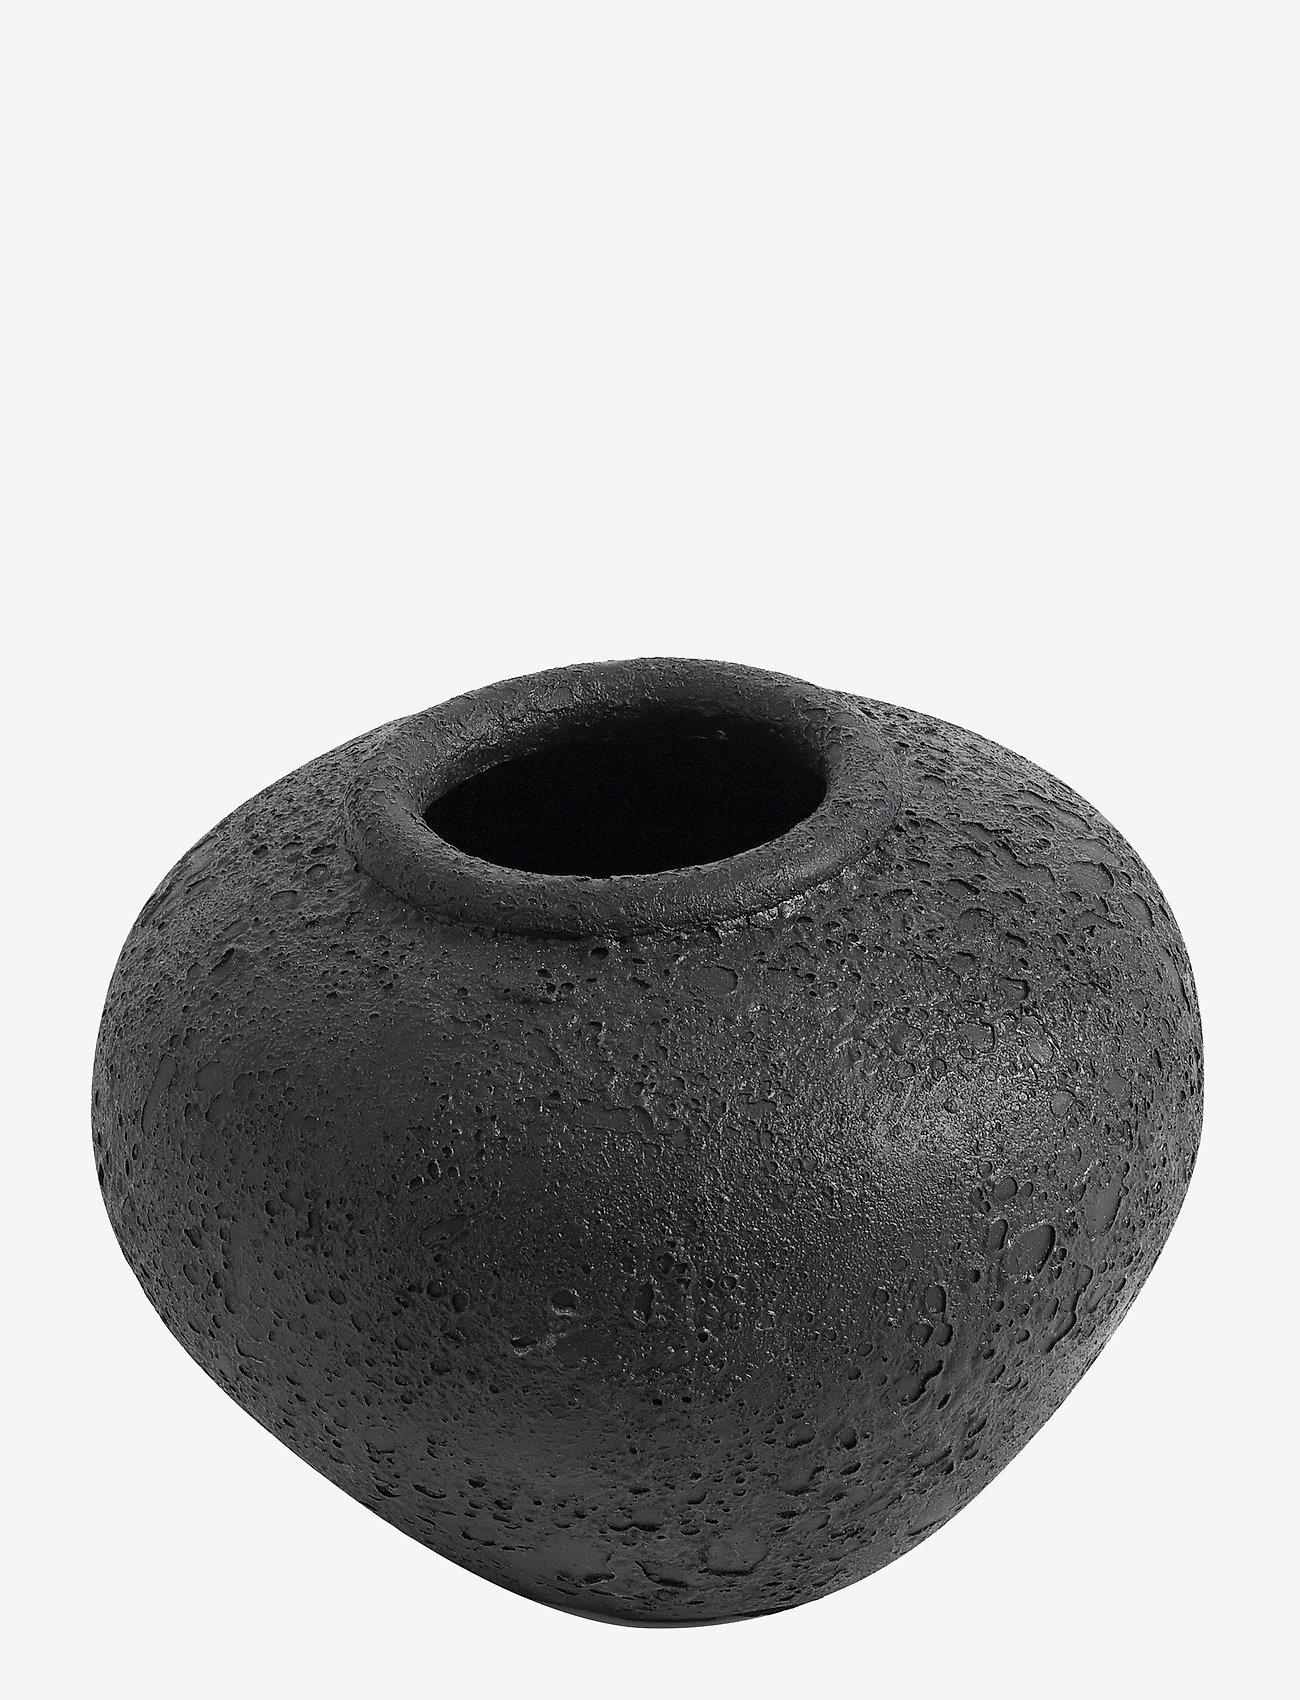 Muubs - Jar Luna Black 18 - große vasen - black - 1